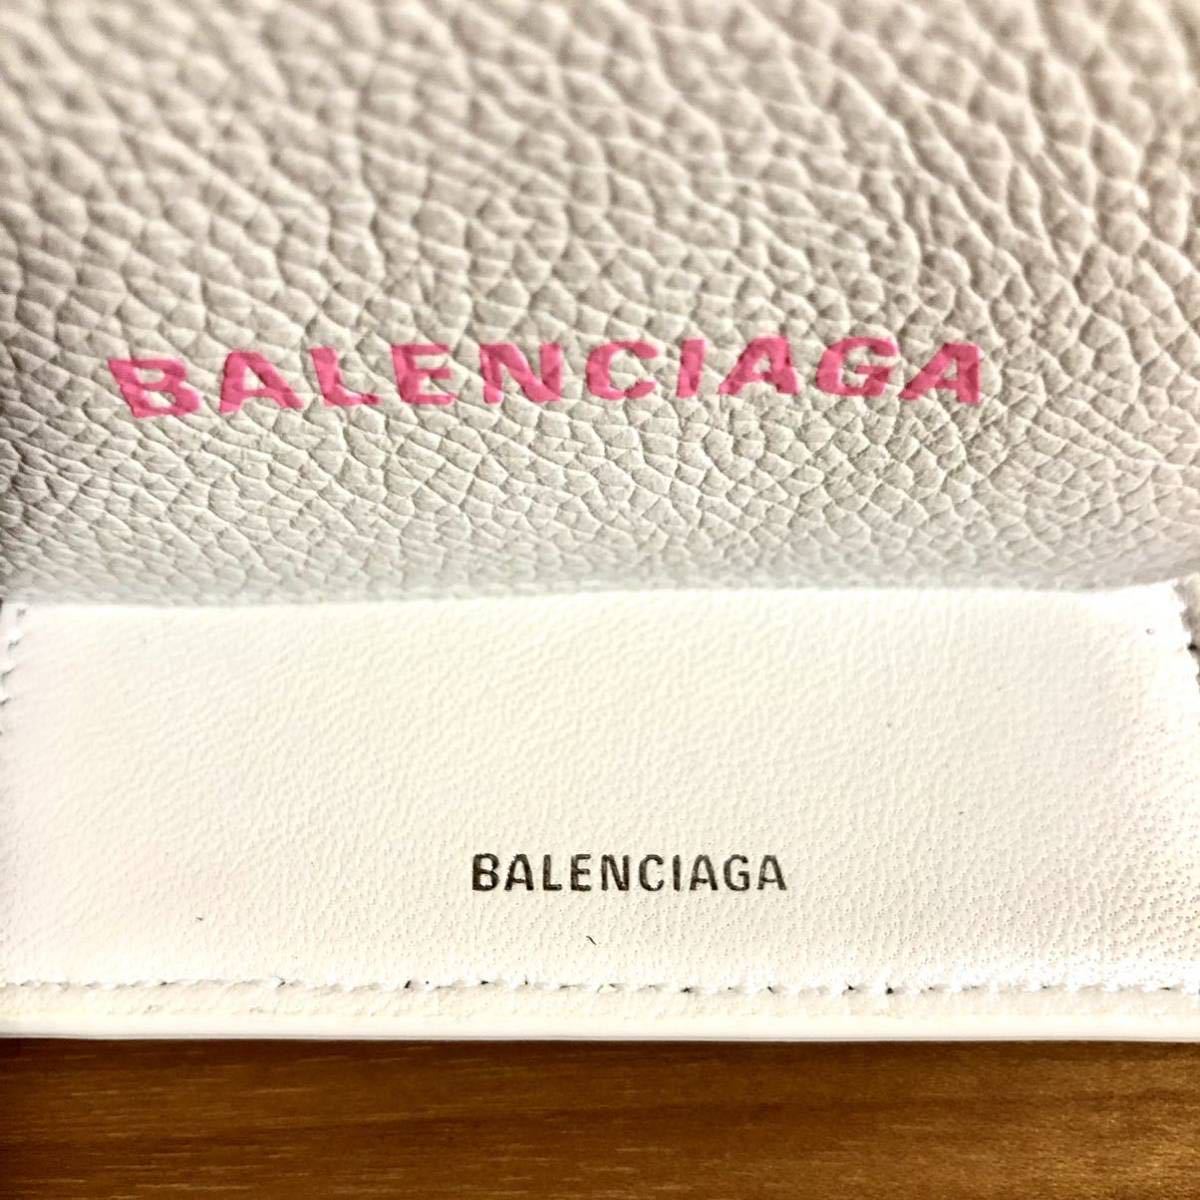 BALENCIAGA バレンシアガ キャッシュミニウォレット 財布 三つ折り コンパクト カーフスキン ホワイト ピンク 新品未使用 正規品 本物 人気_画像6